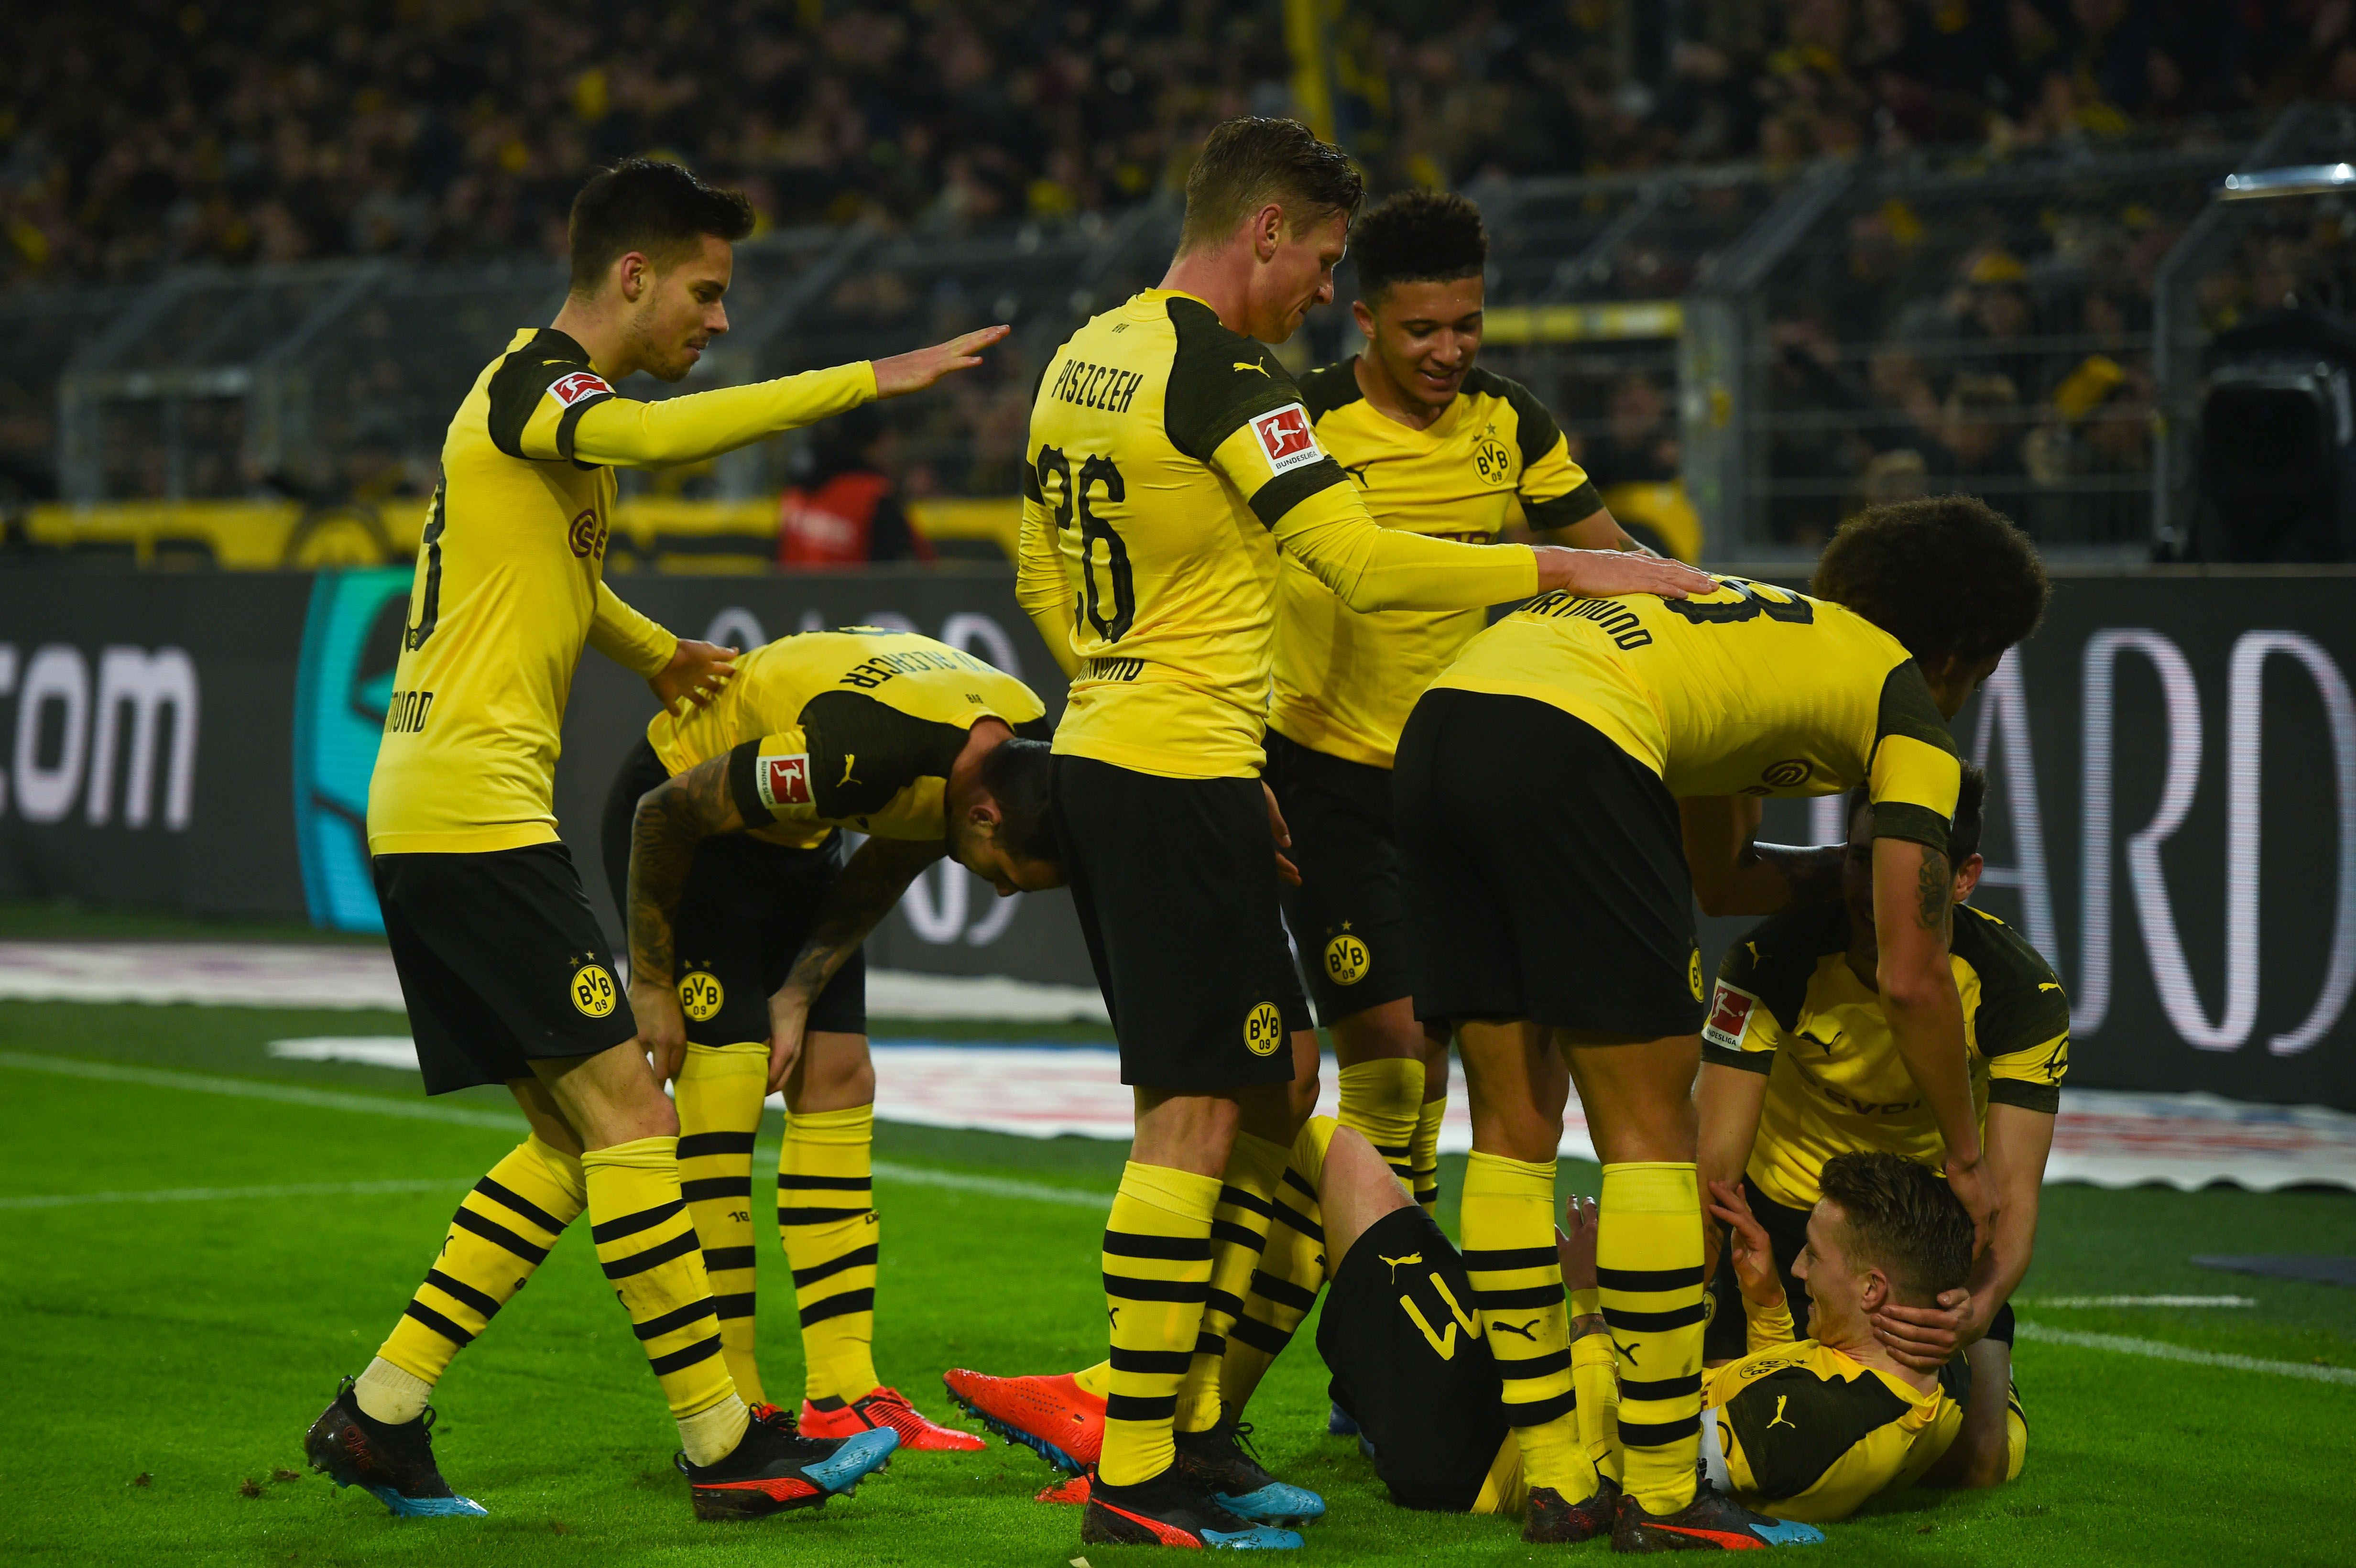 Los jugadores del Borussia Dortmund festejan contra el Hannover 96. (Foto Prensa Libre: AFP)